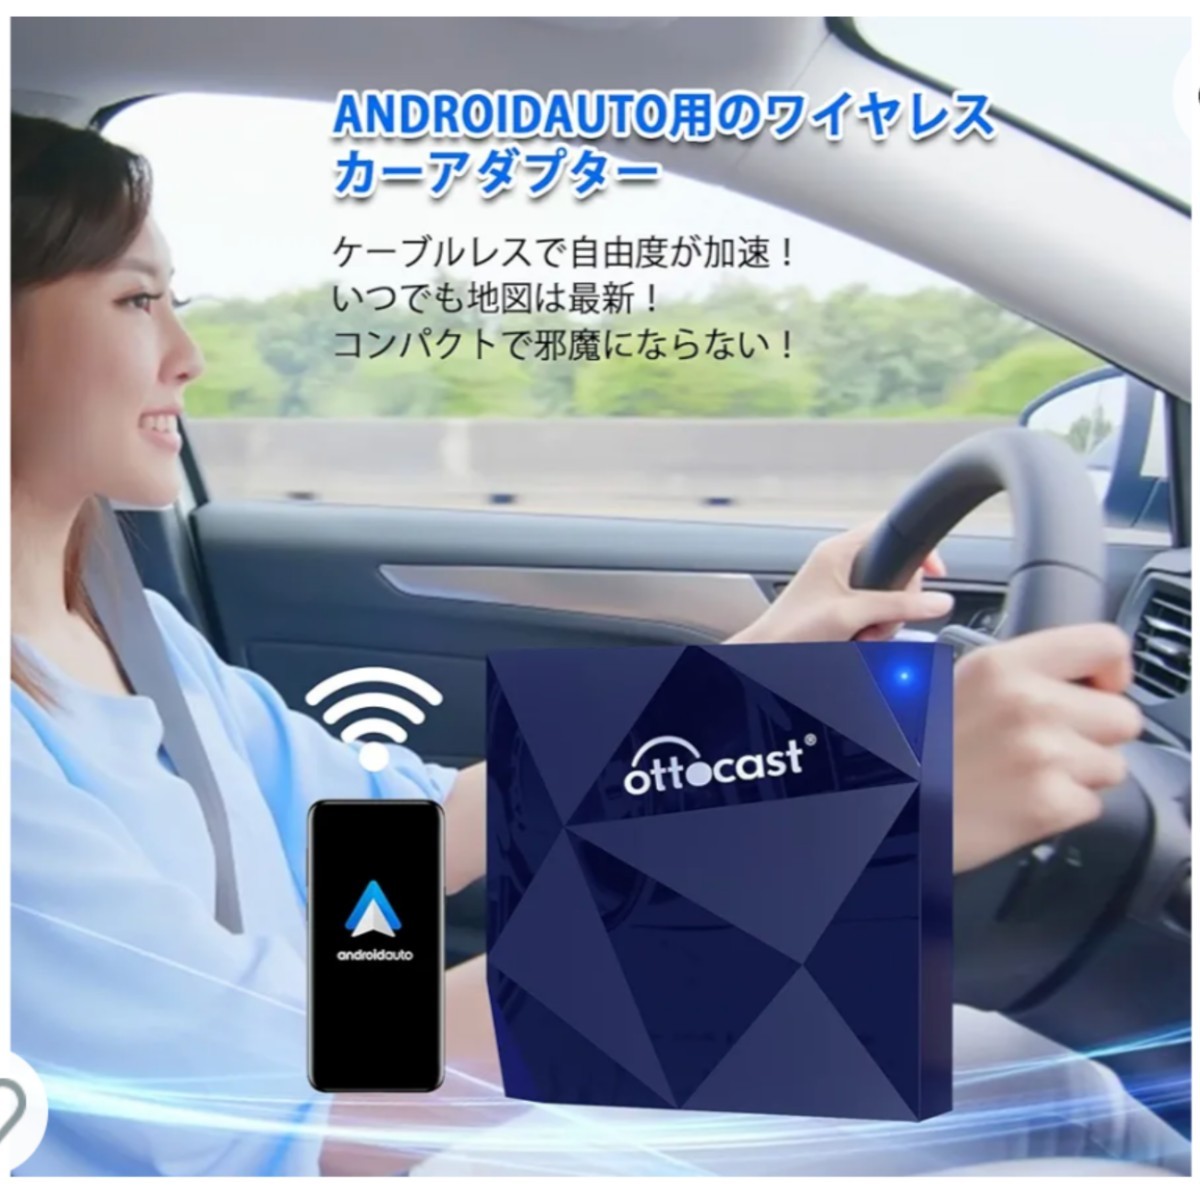 【送料込み】オットキャスト アンドロイドオートワイヤレス化アダプター 純正有線Android Auto Wireless Ottocast A2Air android auto_画像4